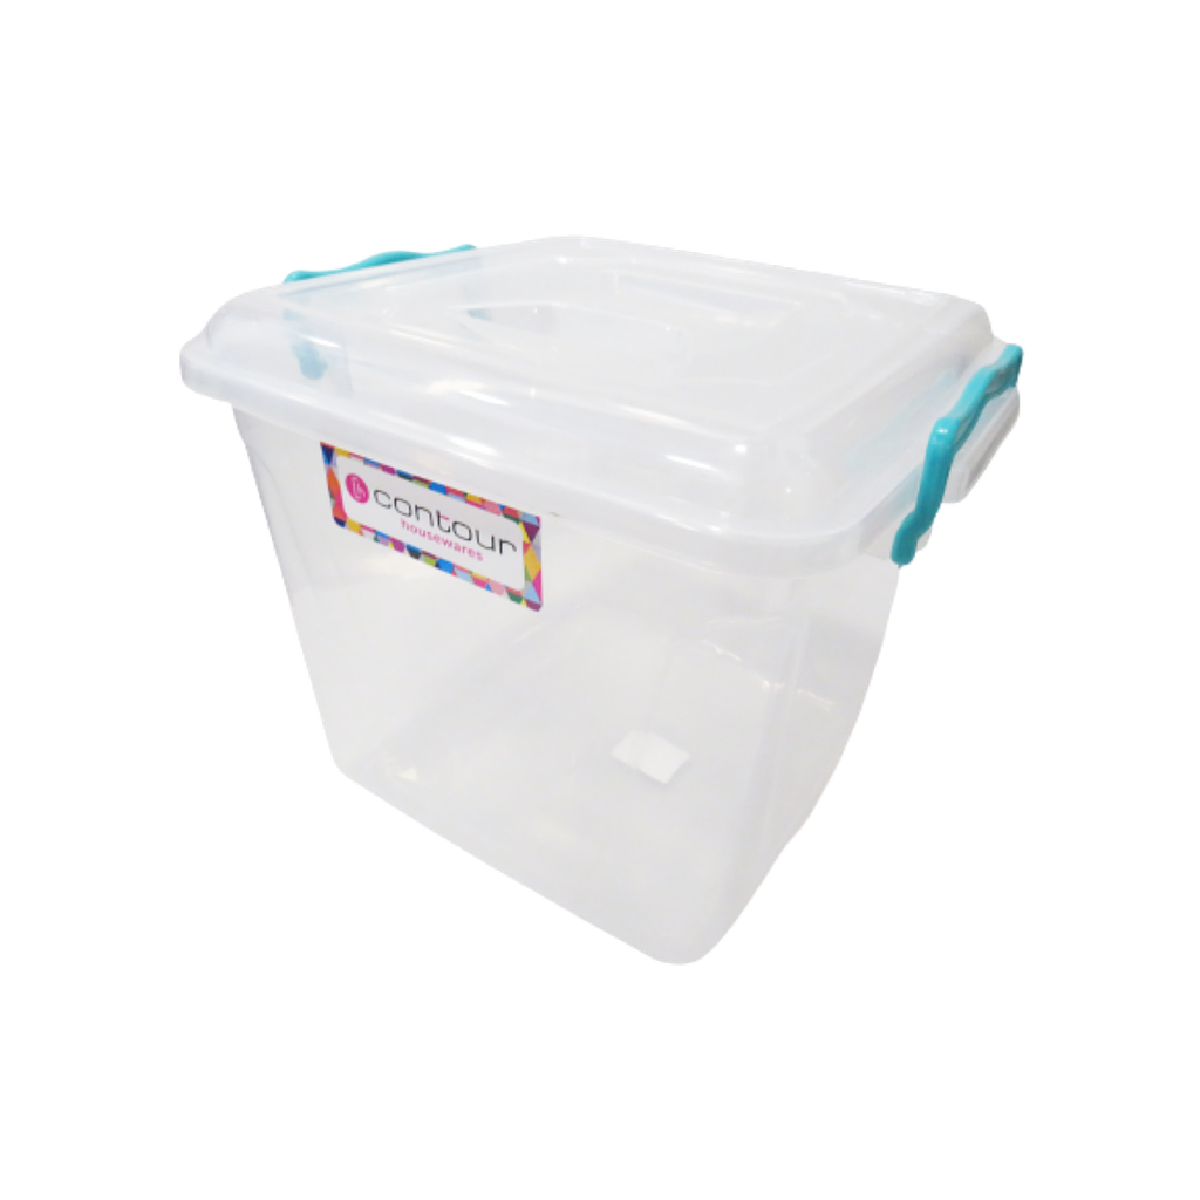 Storage Box Clear Plastic 8.5lt